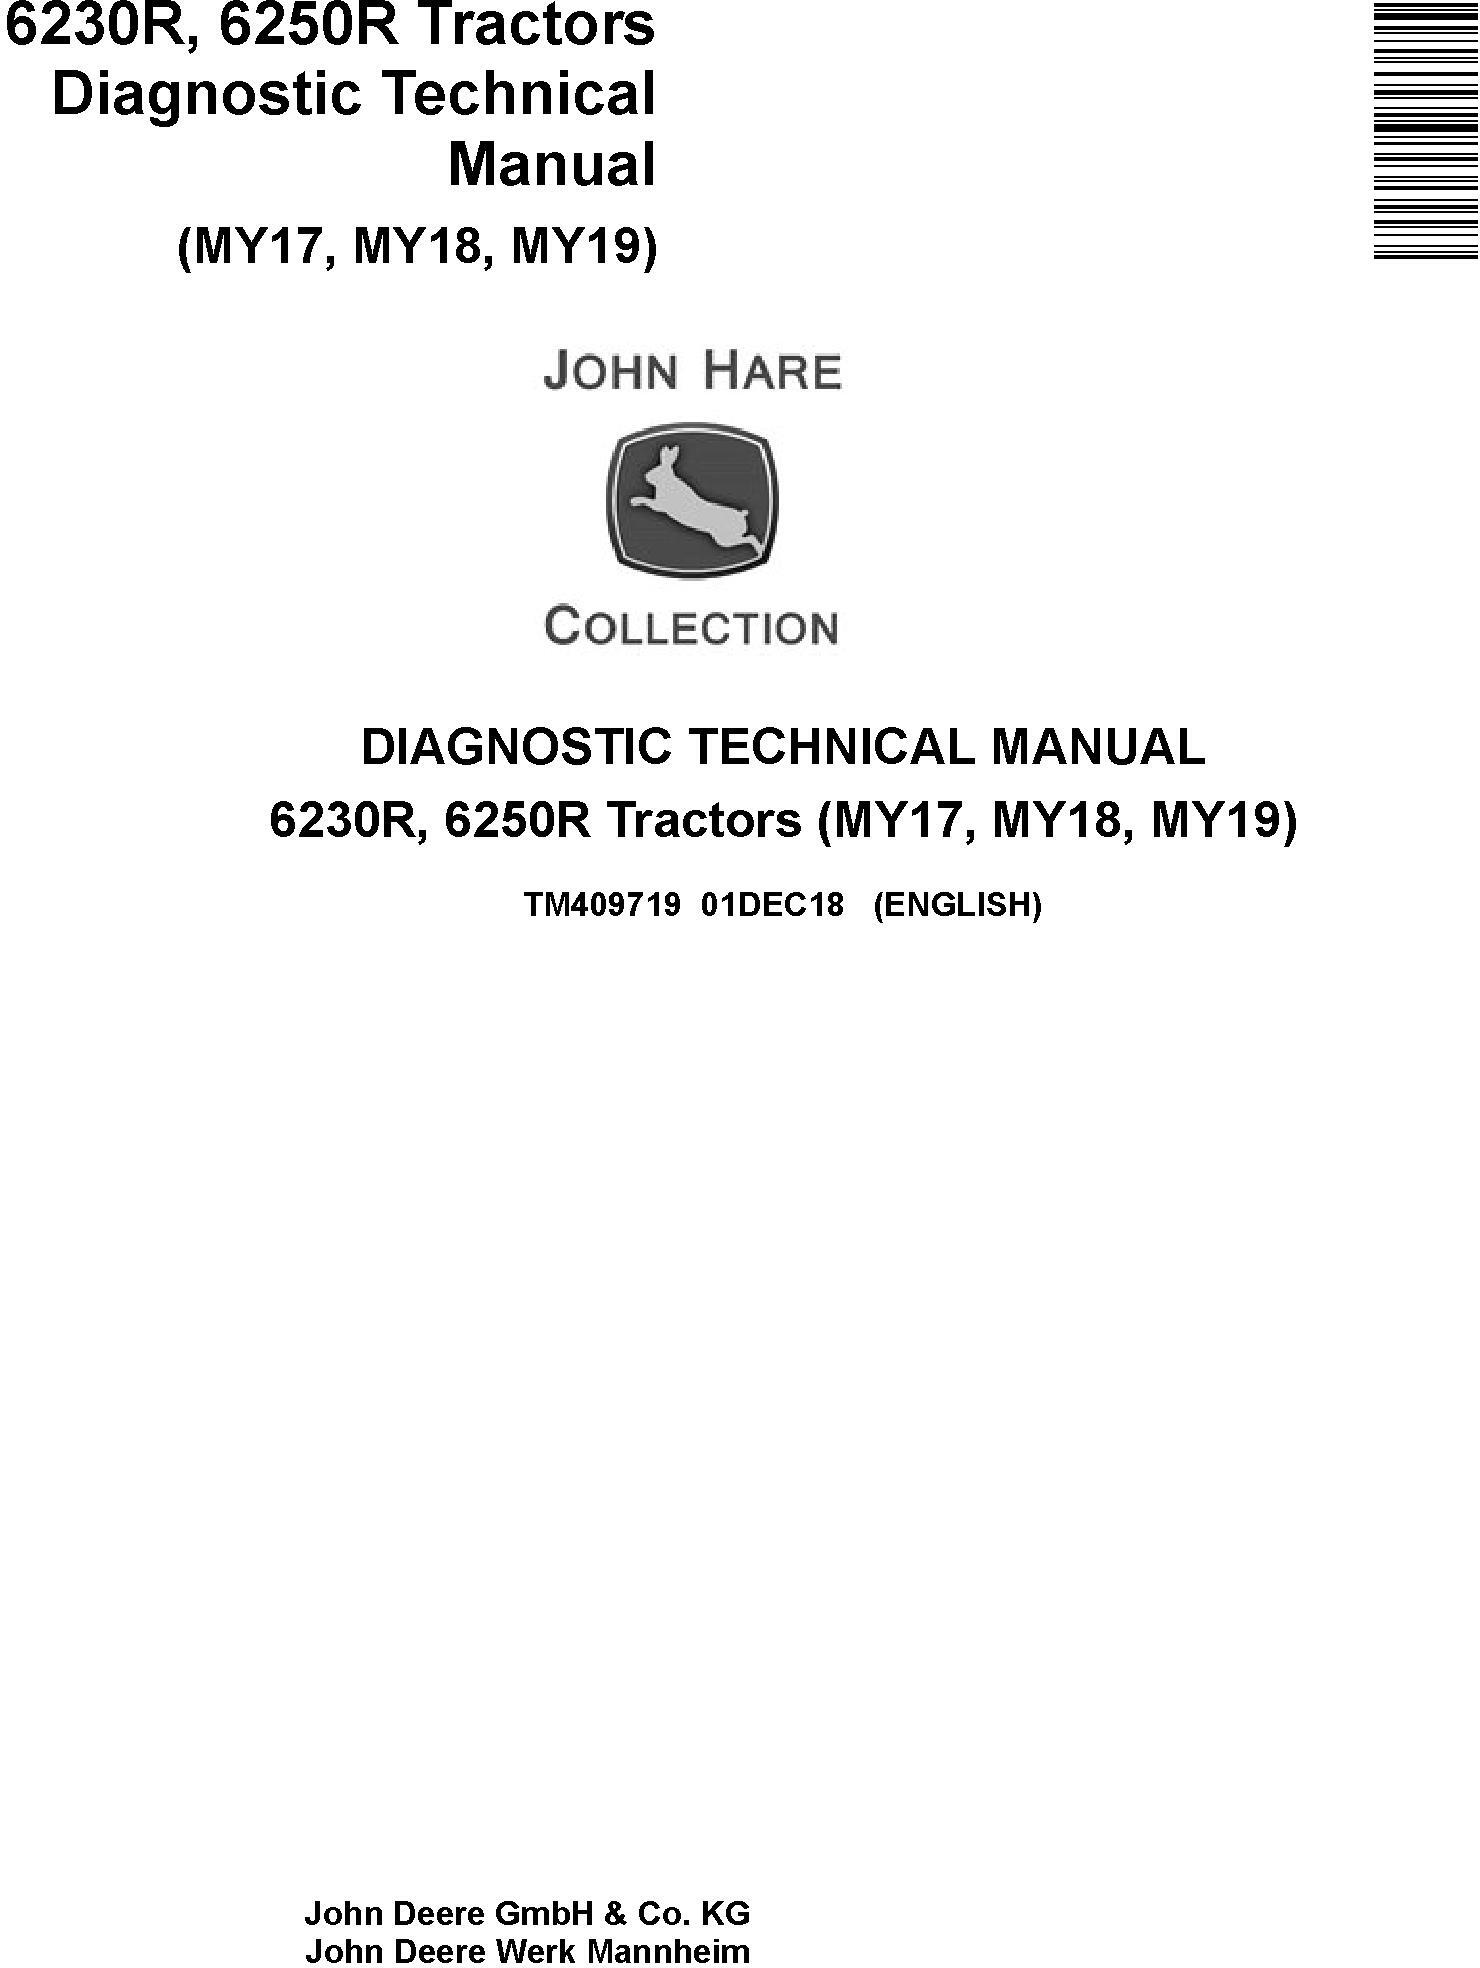 John Deere 6230R, 6250R Tractors MY2017,18,19 Diagnostic Technical Service Manual (TM409719) - 19131